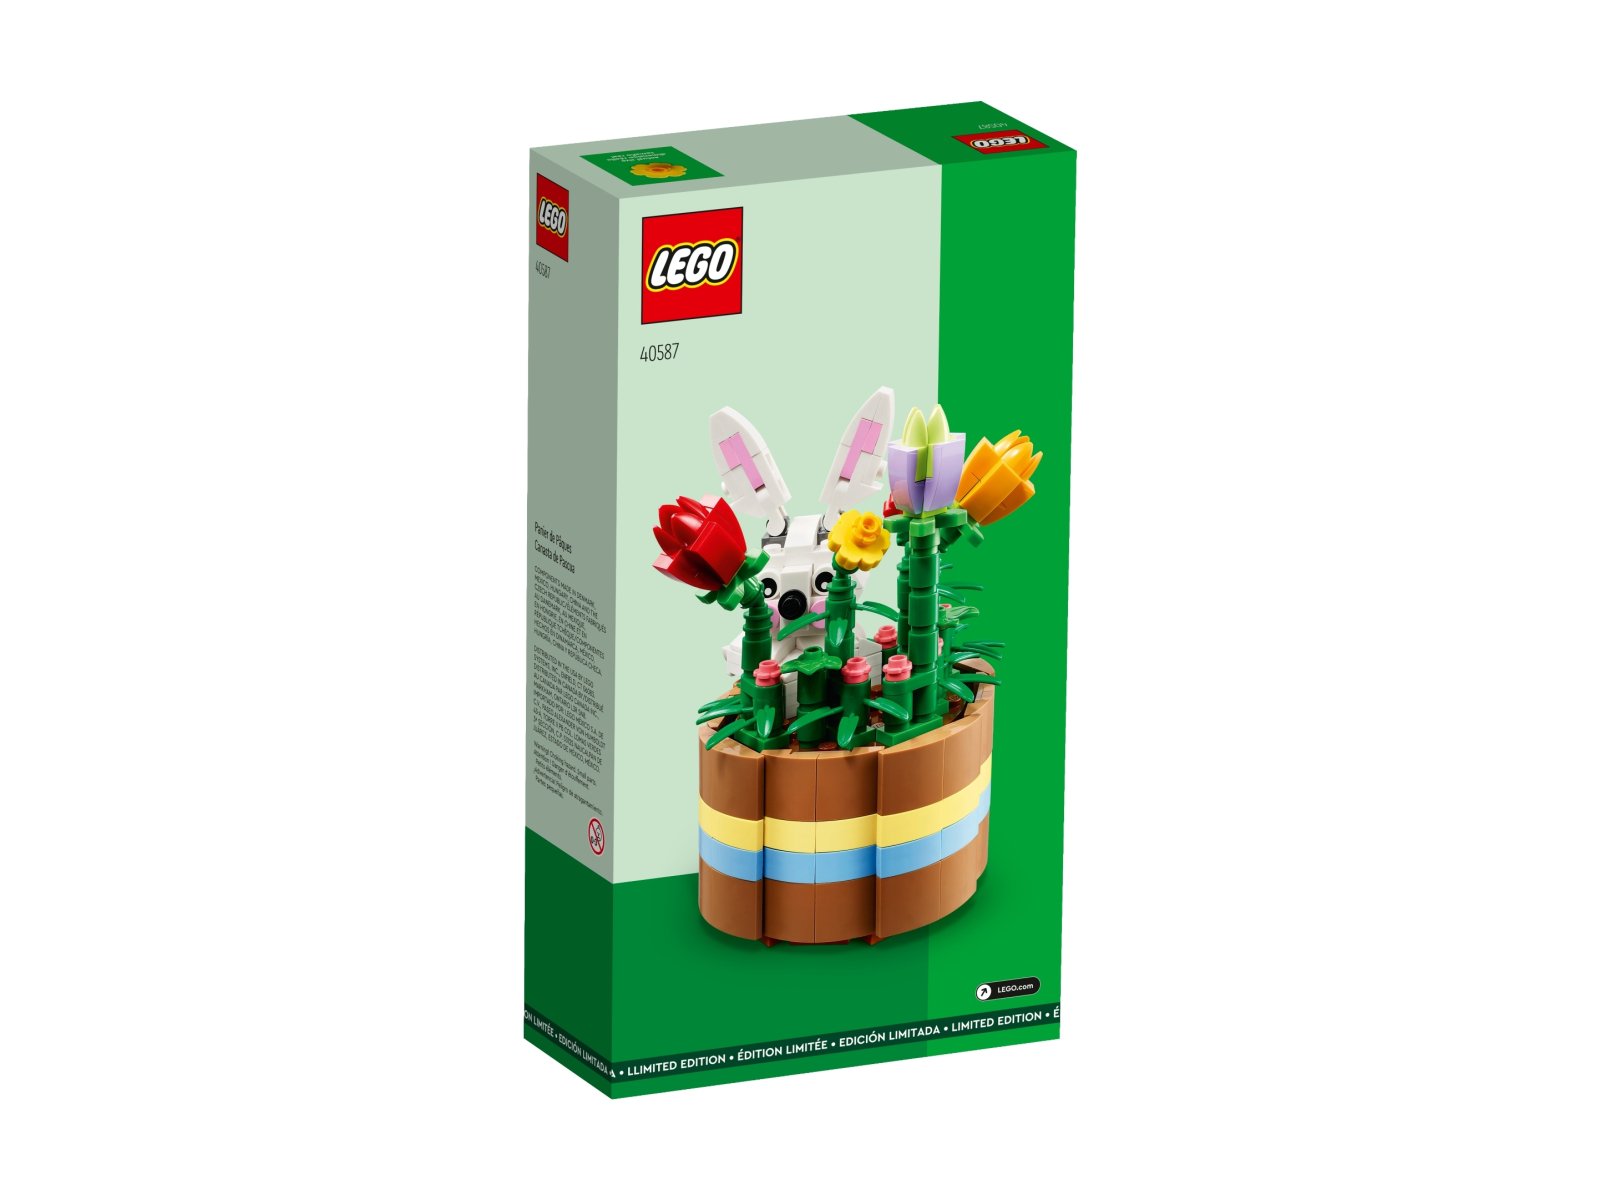 LEGO Wielkanocny koszyk 40587